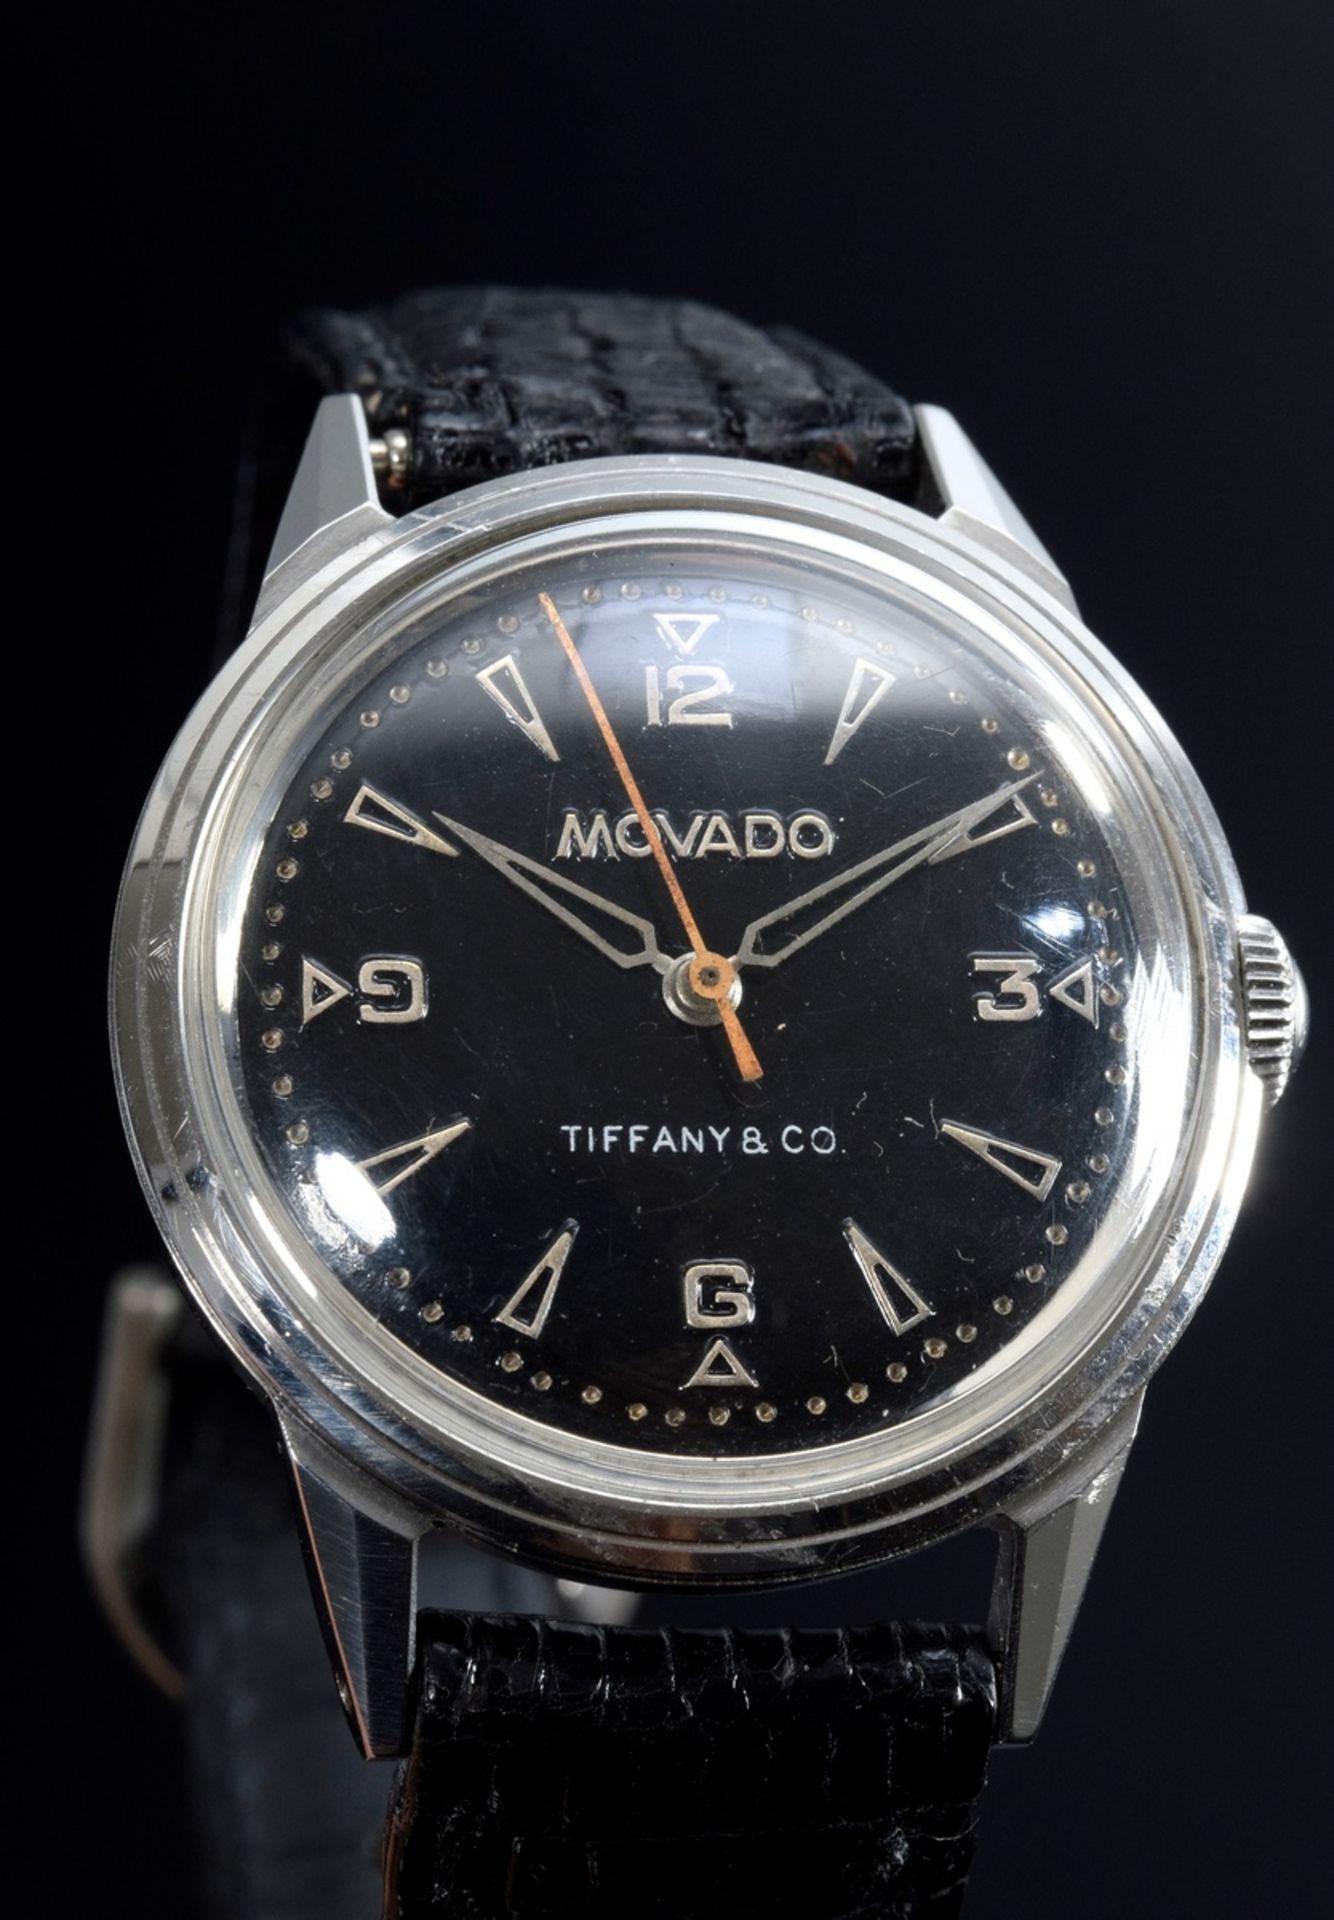 Tiffany & Co. Herrenarmbanduhr mit Movado Werk, Handaufzug, Edelstahl mit schwarzem Echsenband, gro